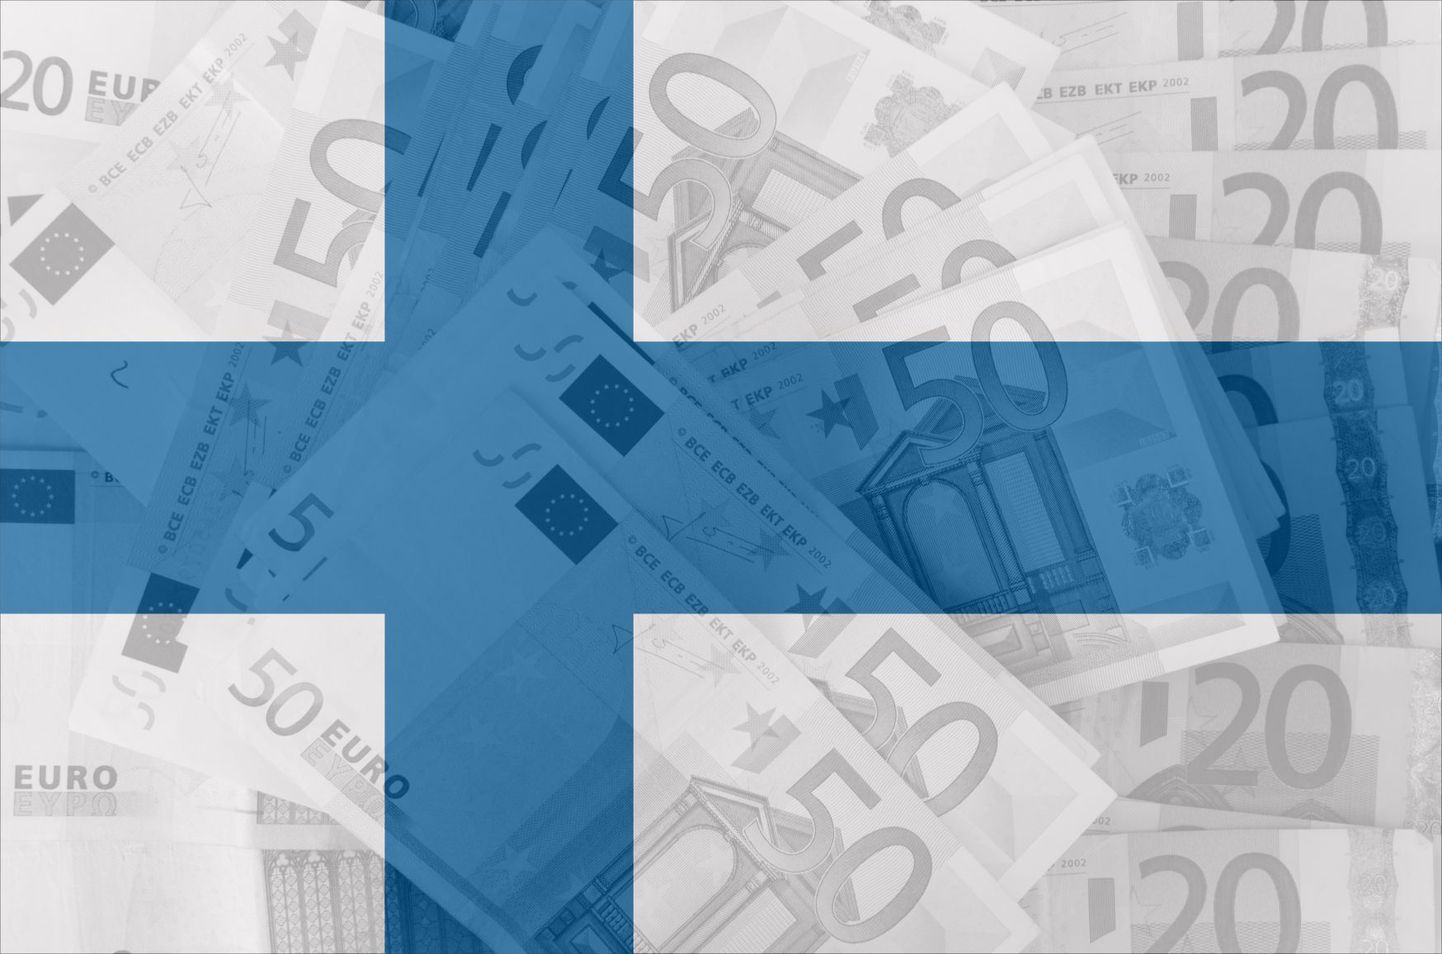 Soome lipp, millest kumavad läbi 20- ja 50-eurosed rahatähed.